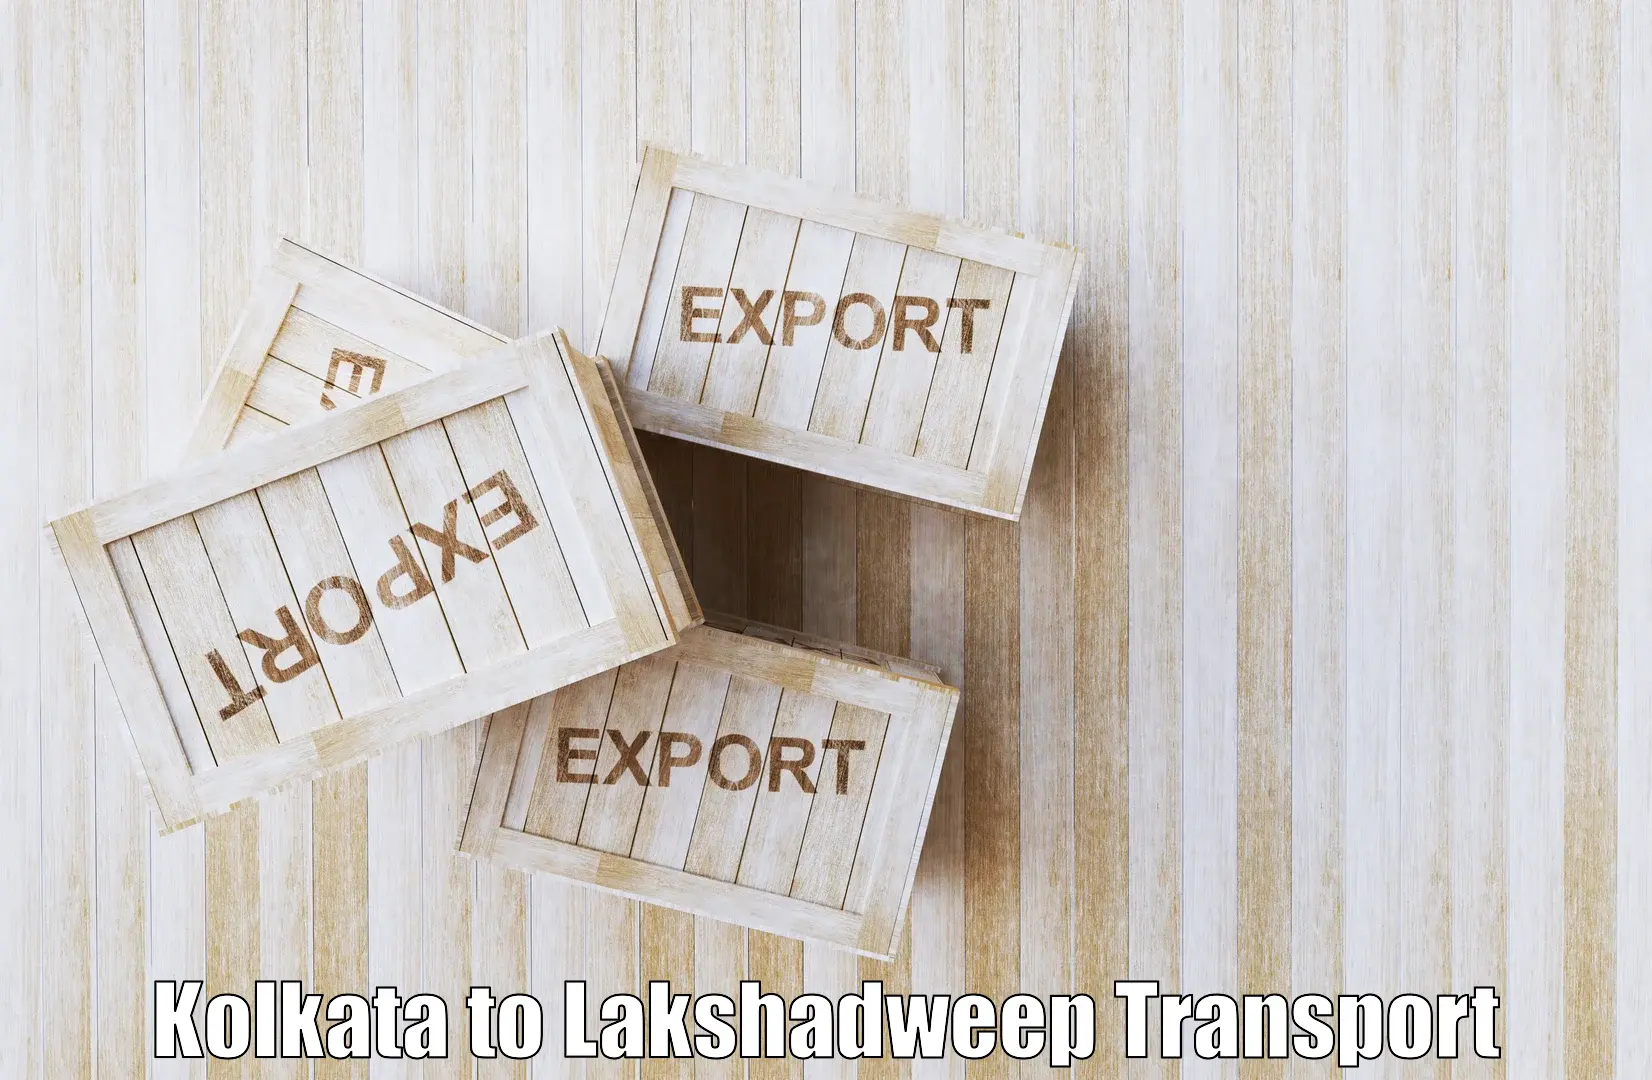 Interstate transport services Kolkata to Lakshadweep